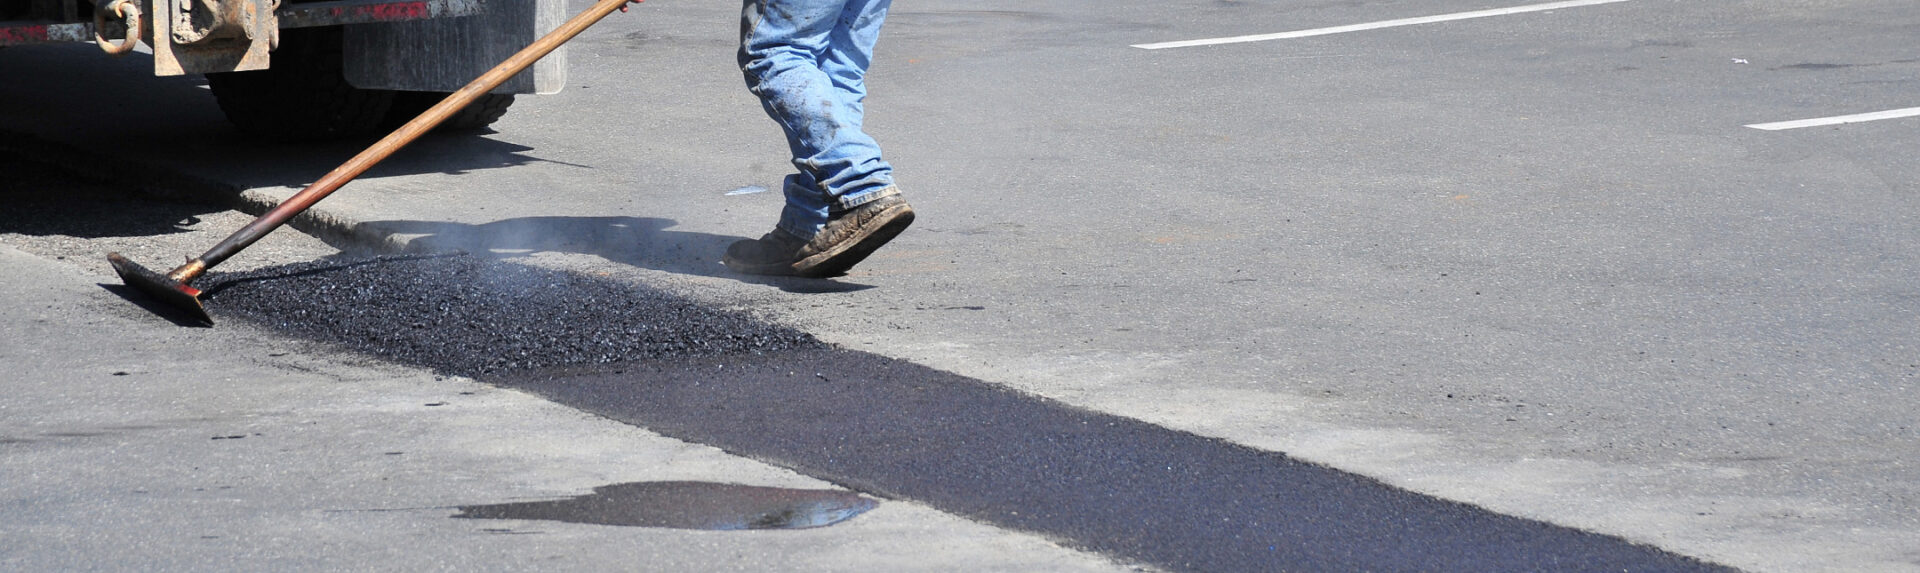 process of pothole repair